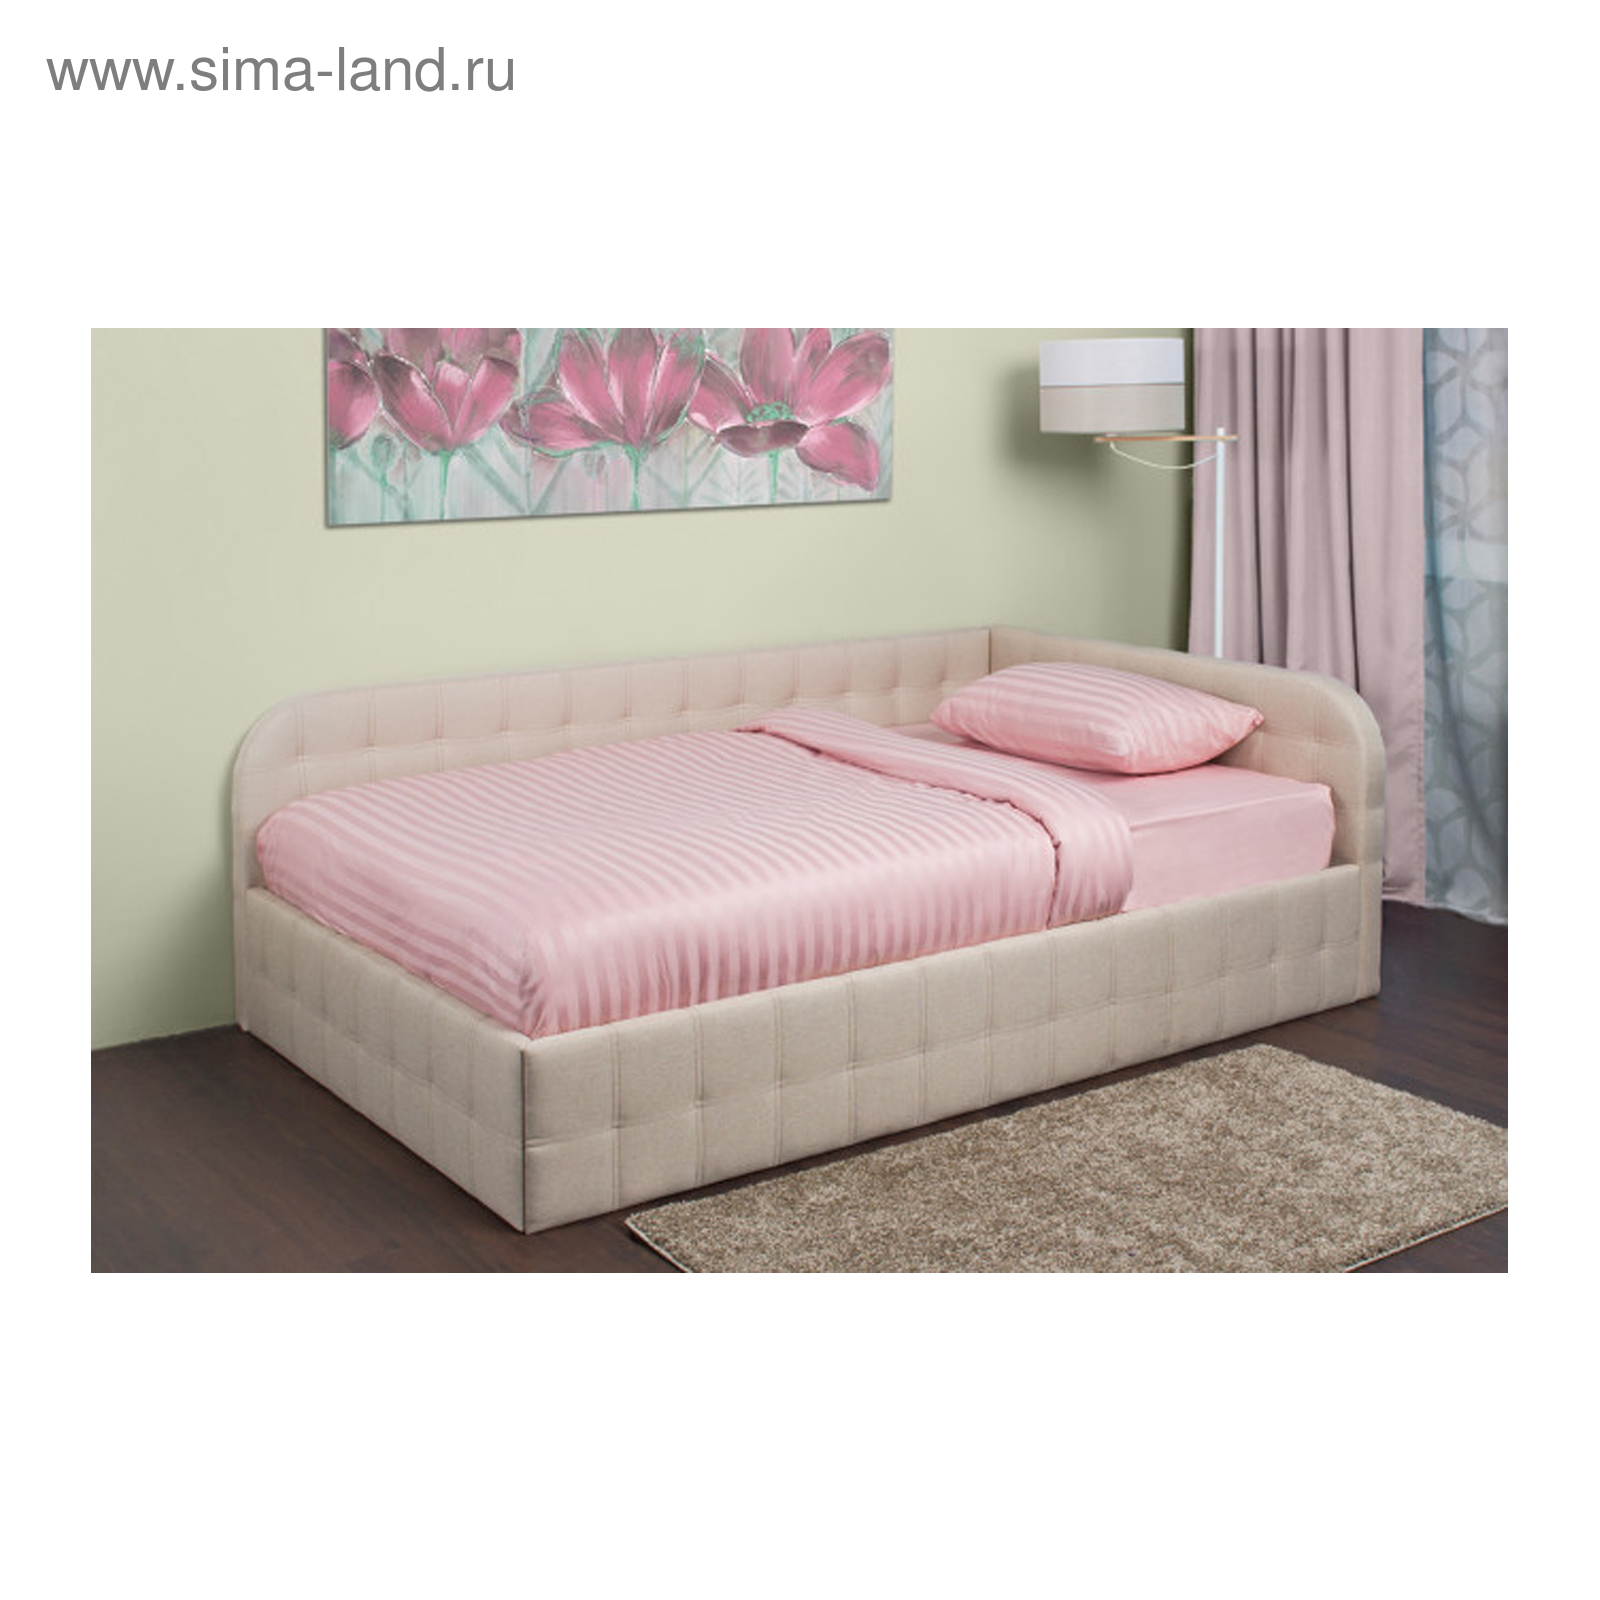 Кровать с подъемным механизмом Дрим левосторонняя 90х200 см